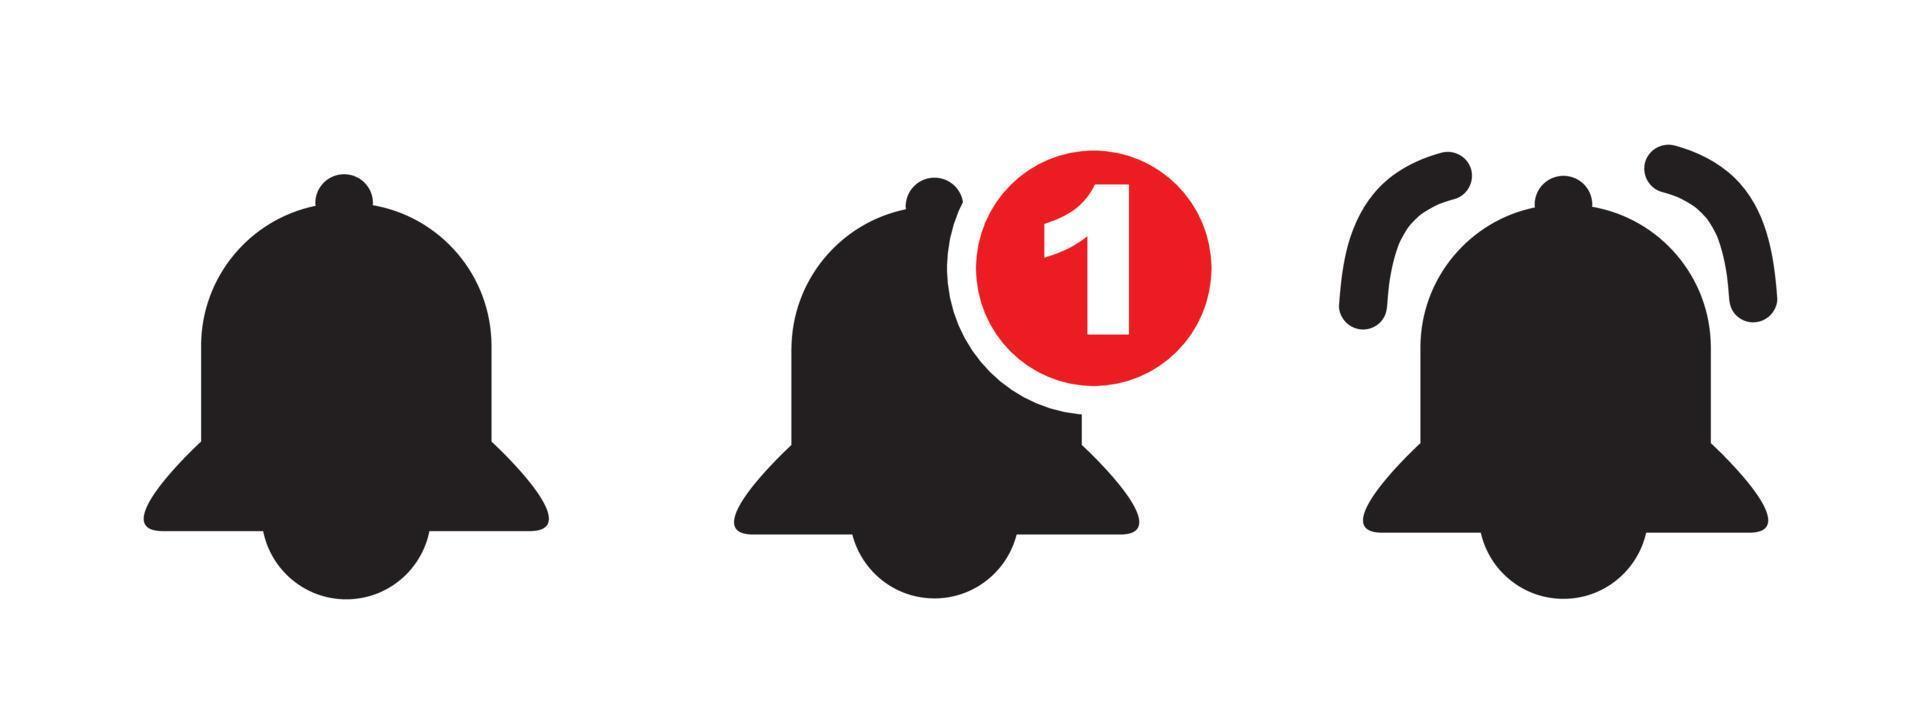 Benachrichtigungsglockensymbol für eingehende Posteingangsnachrichten. Vektorklingel und Benachrichtigungsnummernzeichen für Wecker und Smartphone-Anwendungsalarm vektor